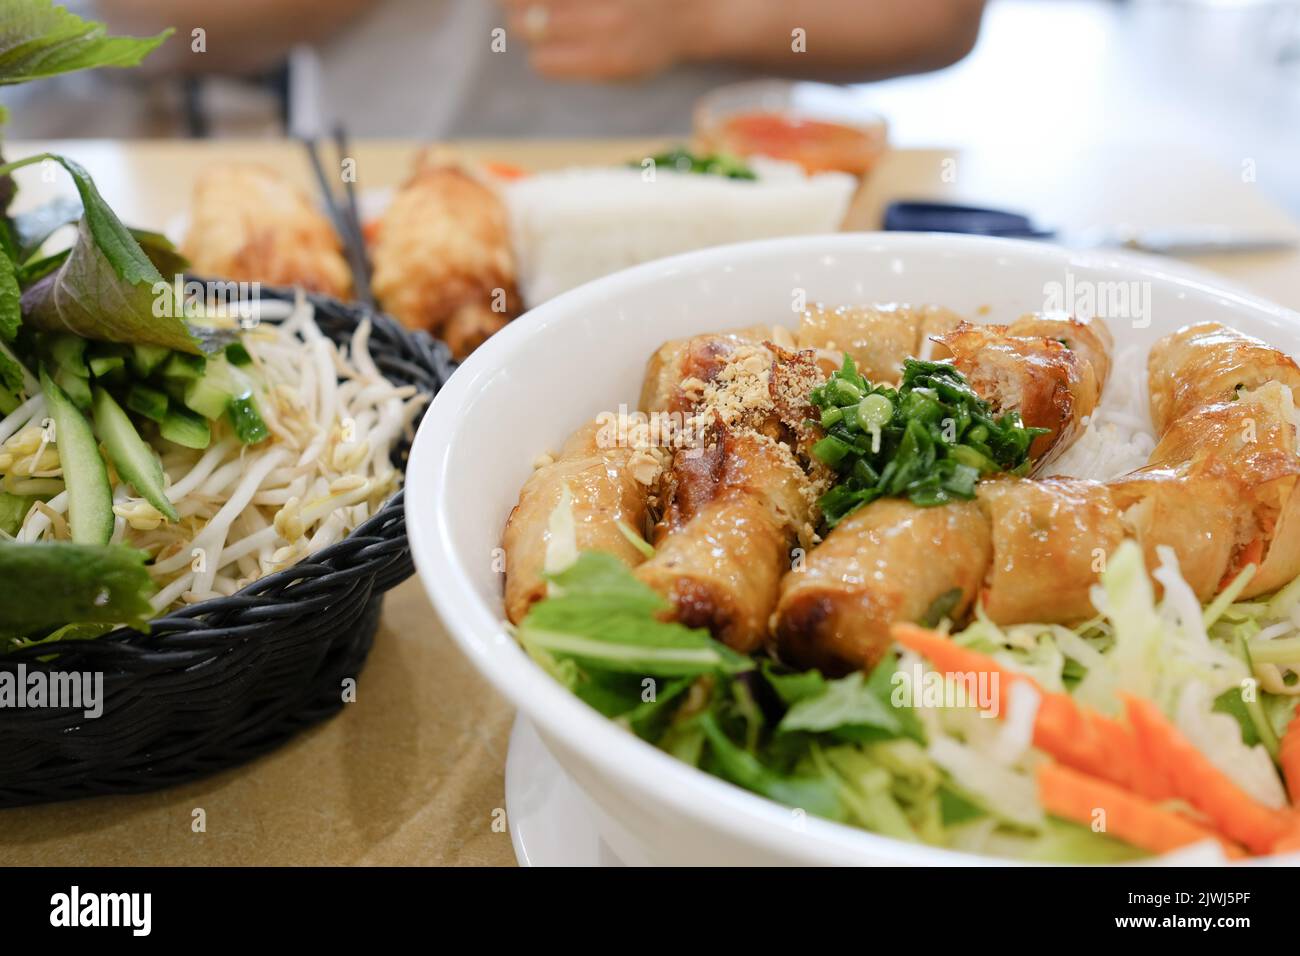 Bún Chả avec rouleaux de printemps et Chả Tôm (crevettes de canne à sucre) avec papier de riz au Phu Quoc, un restaurant vietnamien à Cabramatta — Sydney, Australie Banque D'Images